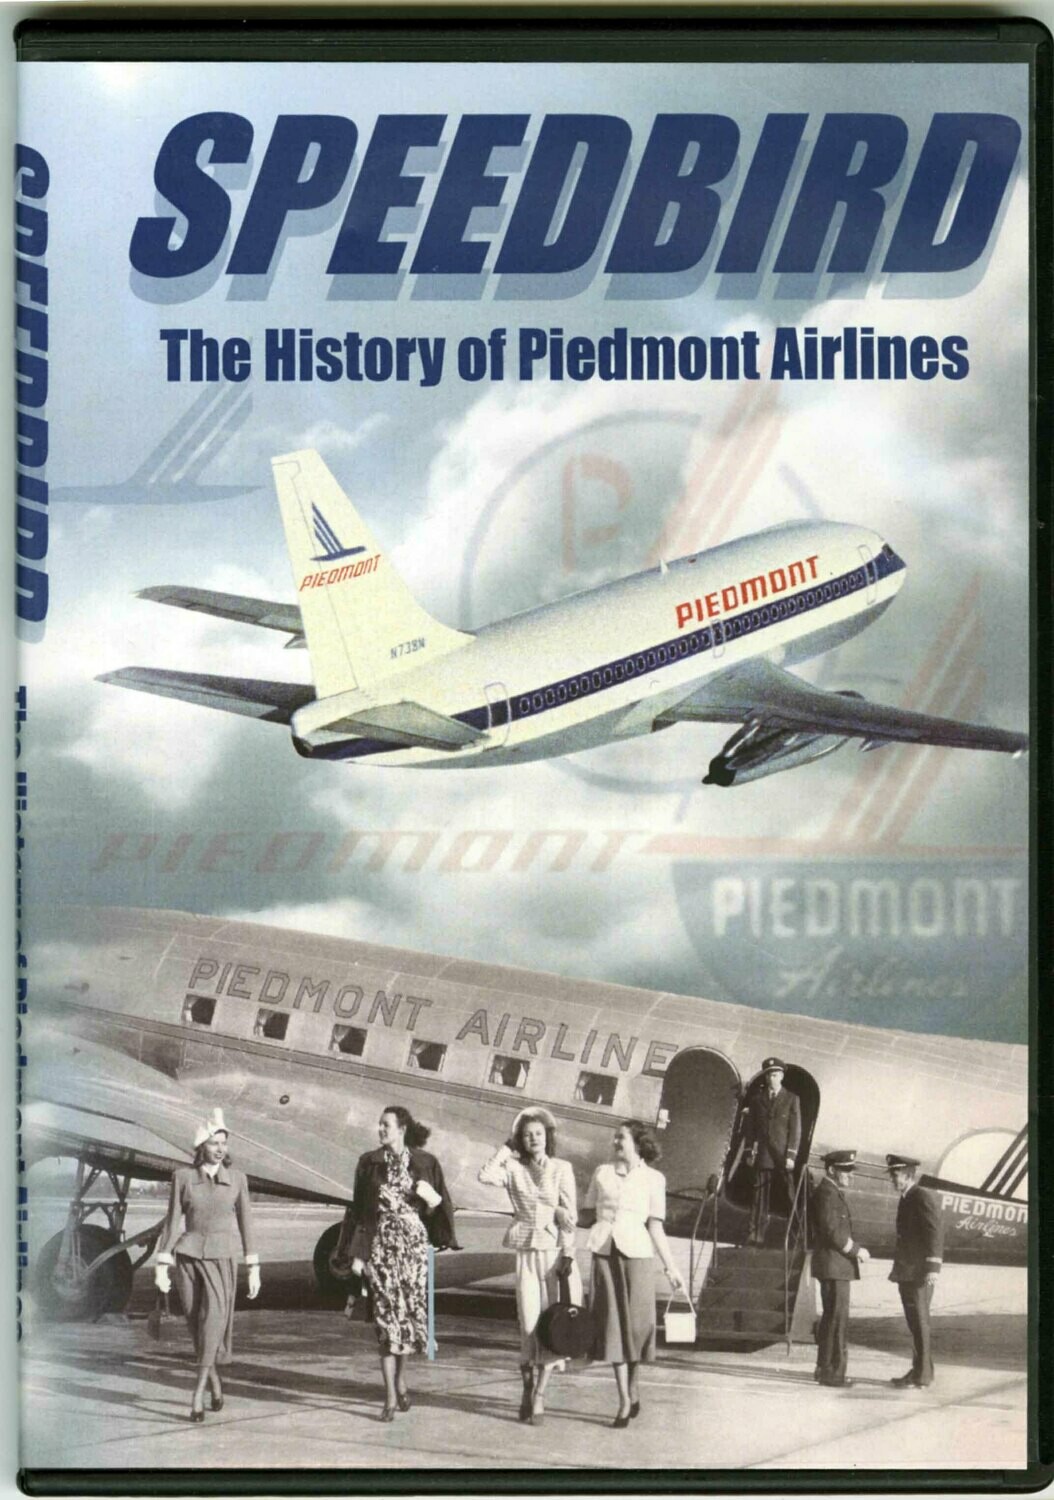 Speedbird: The History of Piedmont Airlines